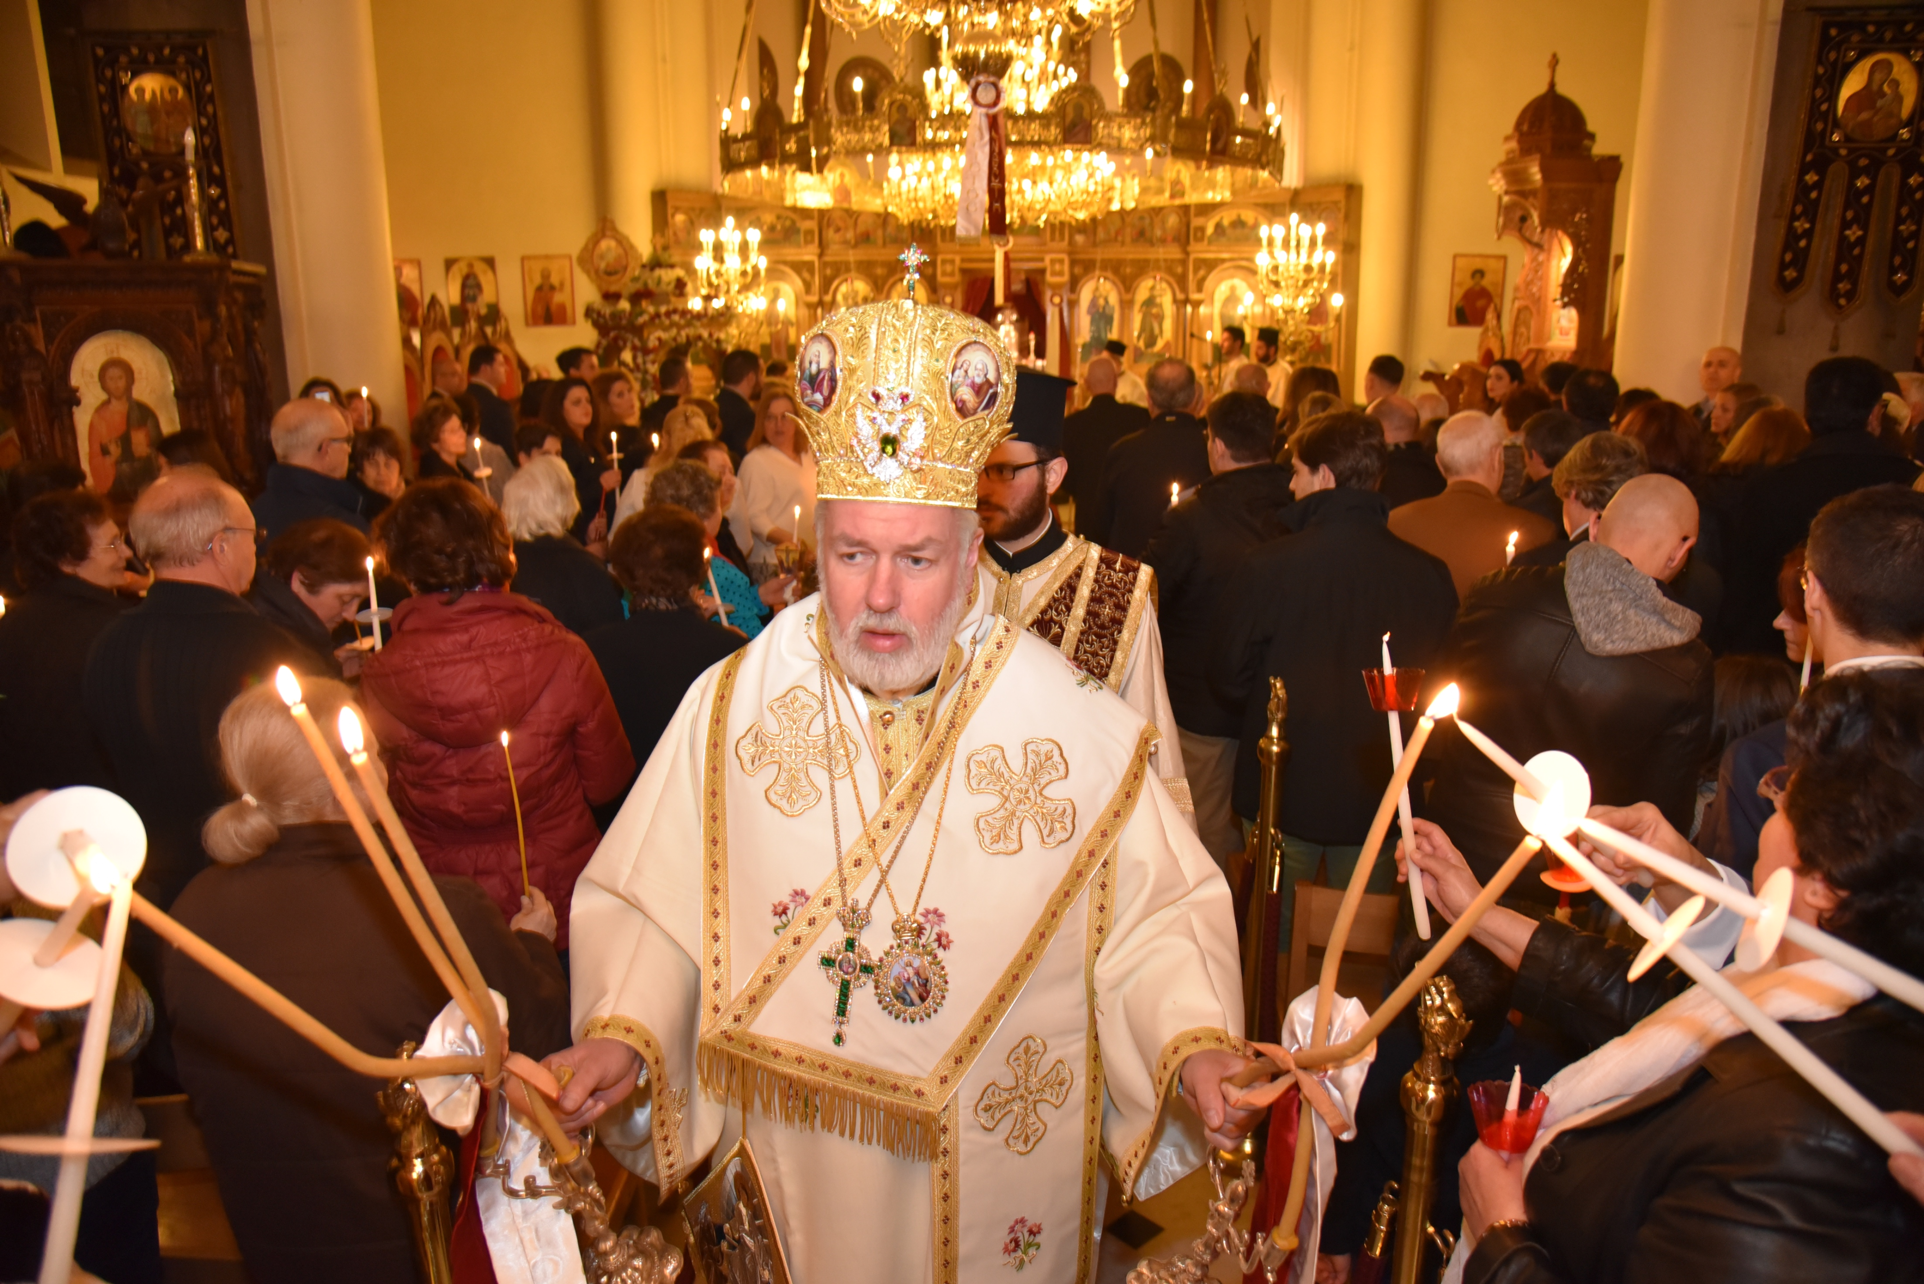 Mgr. Athenagoras Peckstadt bij het begin van een orthodoxe paasliturgie in de orthodoxe kathedraal van Brussel in precoronatijden